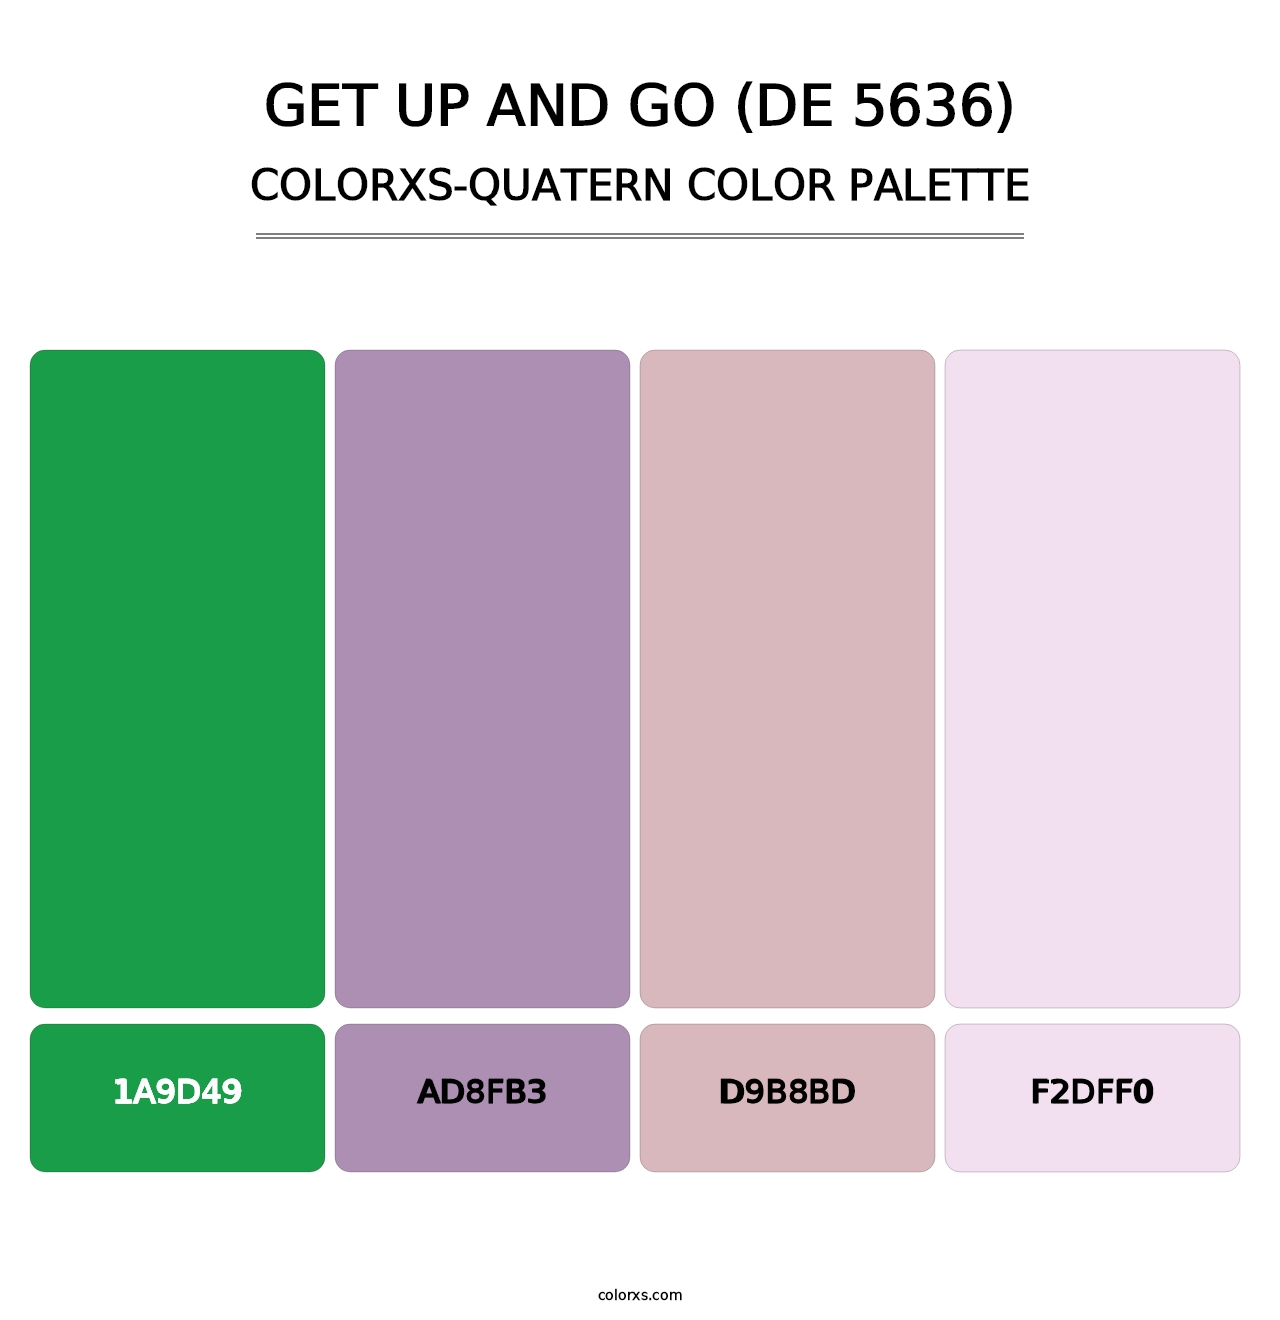 Get Up and Go (DE 5636) - Colorxs Quatern Palette